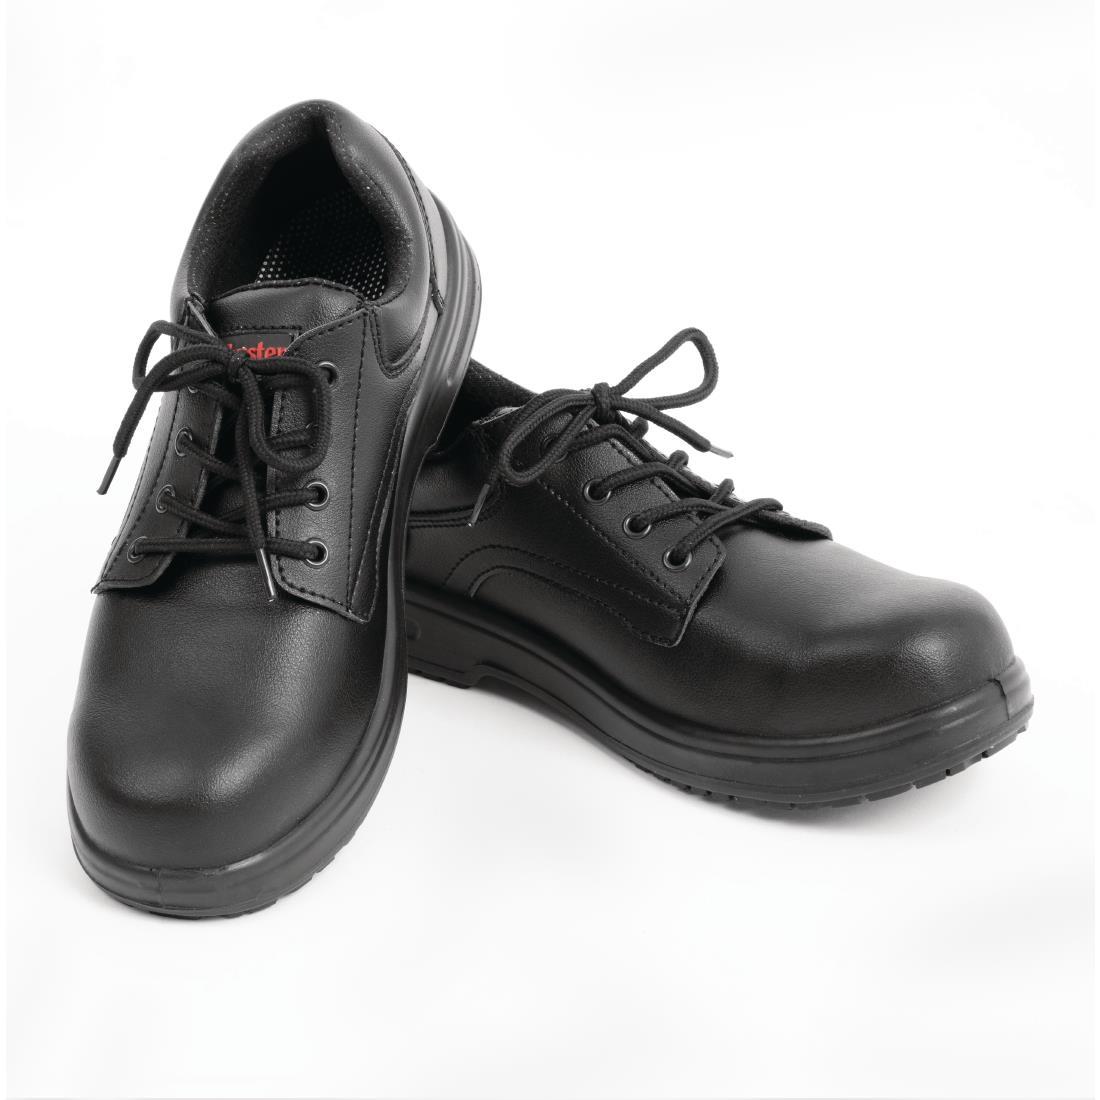 Slipbuster Basic Shoes Slip Resistant Black 38 - BB498-38  - 4